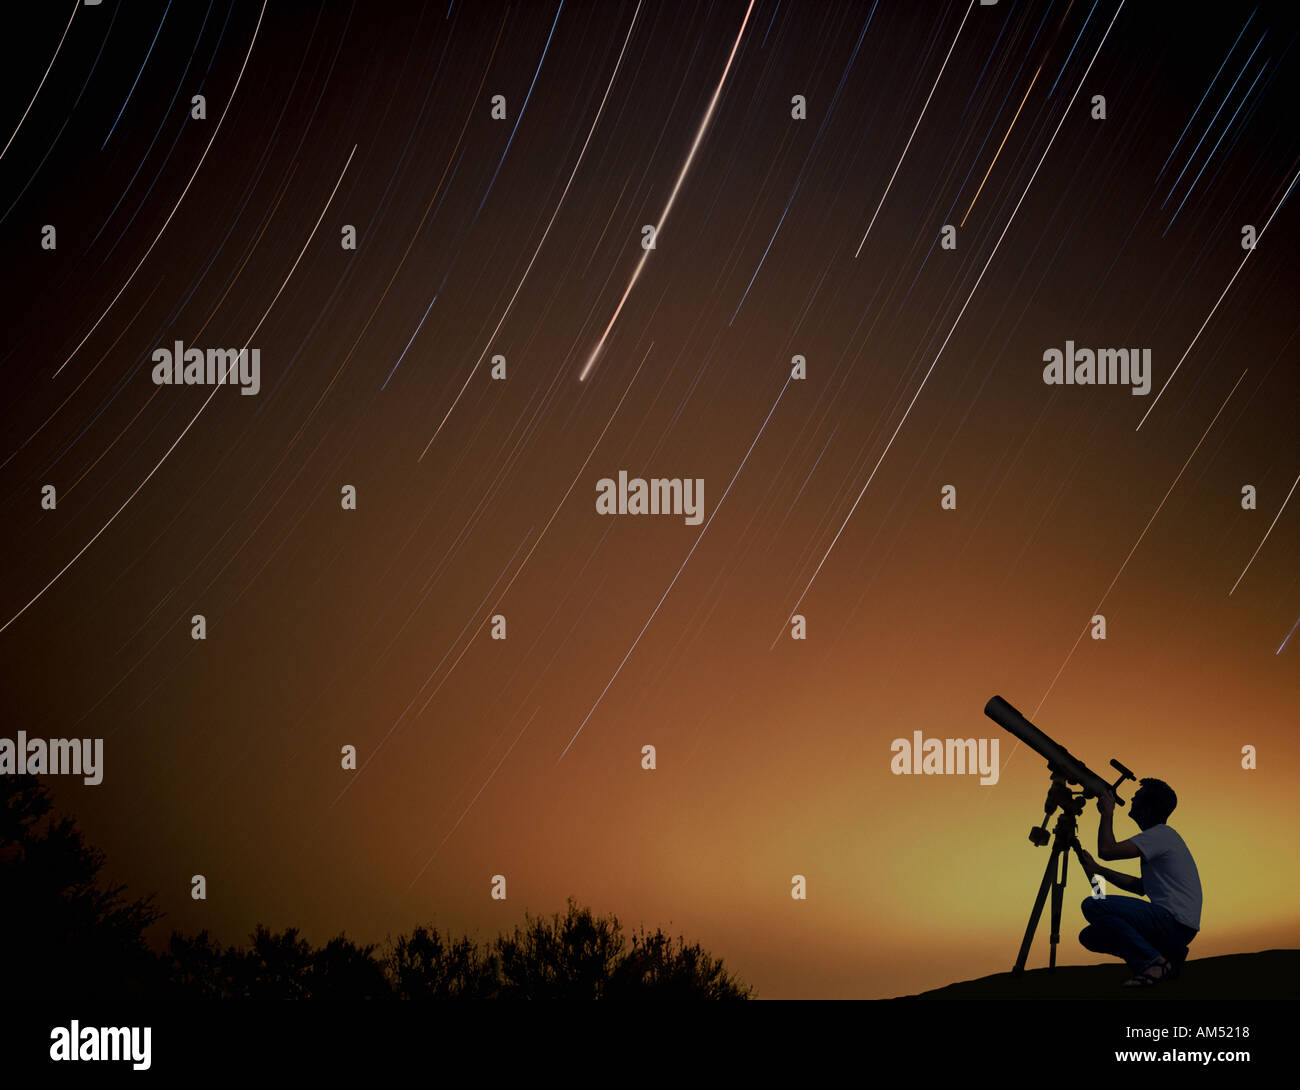 Un homme avec un télescope regarde le ciel nocturne. Star Trails dans le ciel de nuit effectués pendant une longue exposition. Banque D'Images